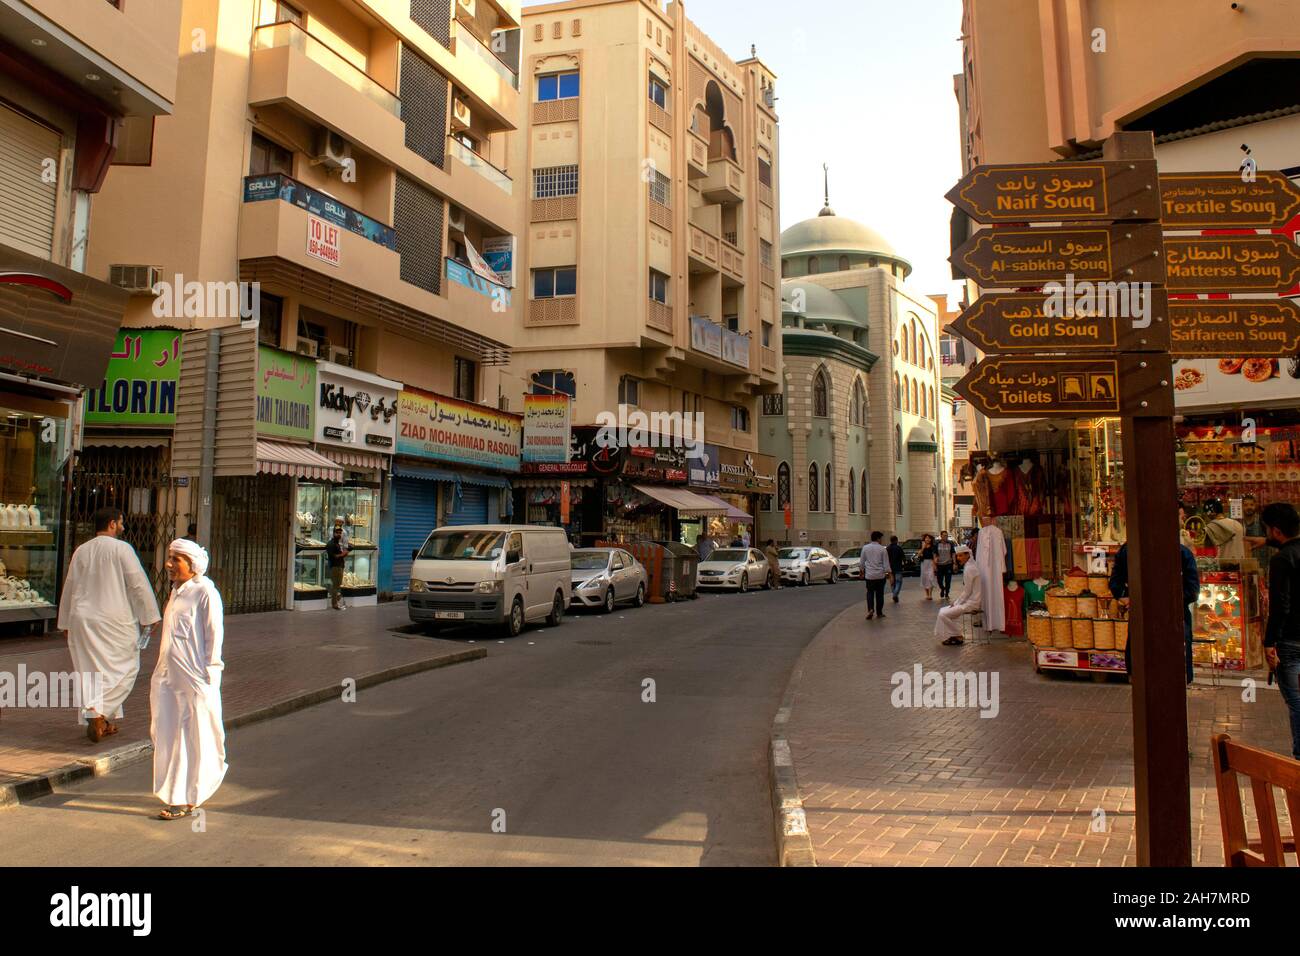 Dubaï - ÉMIRATS ARABES UNIS - 9 novembre, 2019 : le vieux souk de Dubaï city area. Bur Dubai, vieille rue avec mosquée et magasins locaux. Banque D'Images